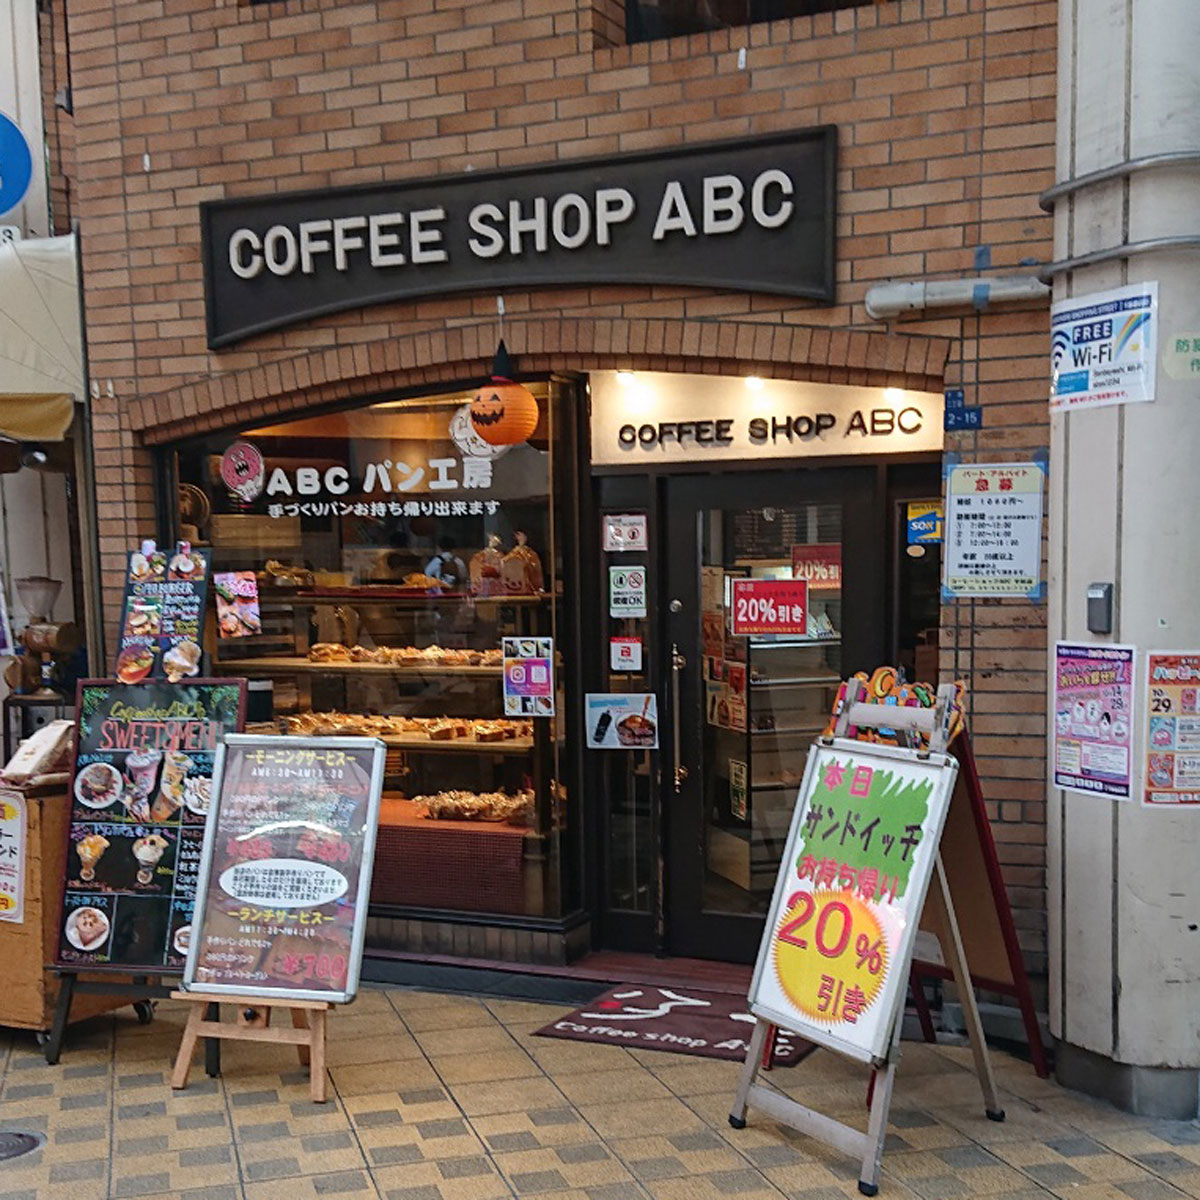 滝井新地 - コーヒーショップABC 地下西店